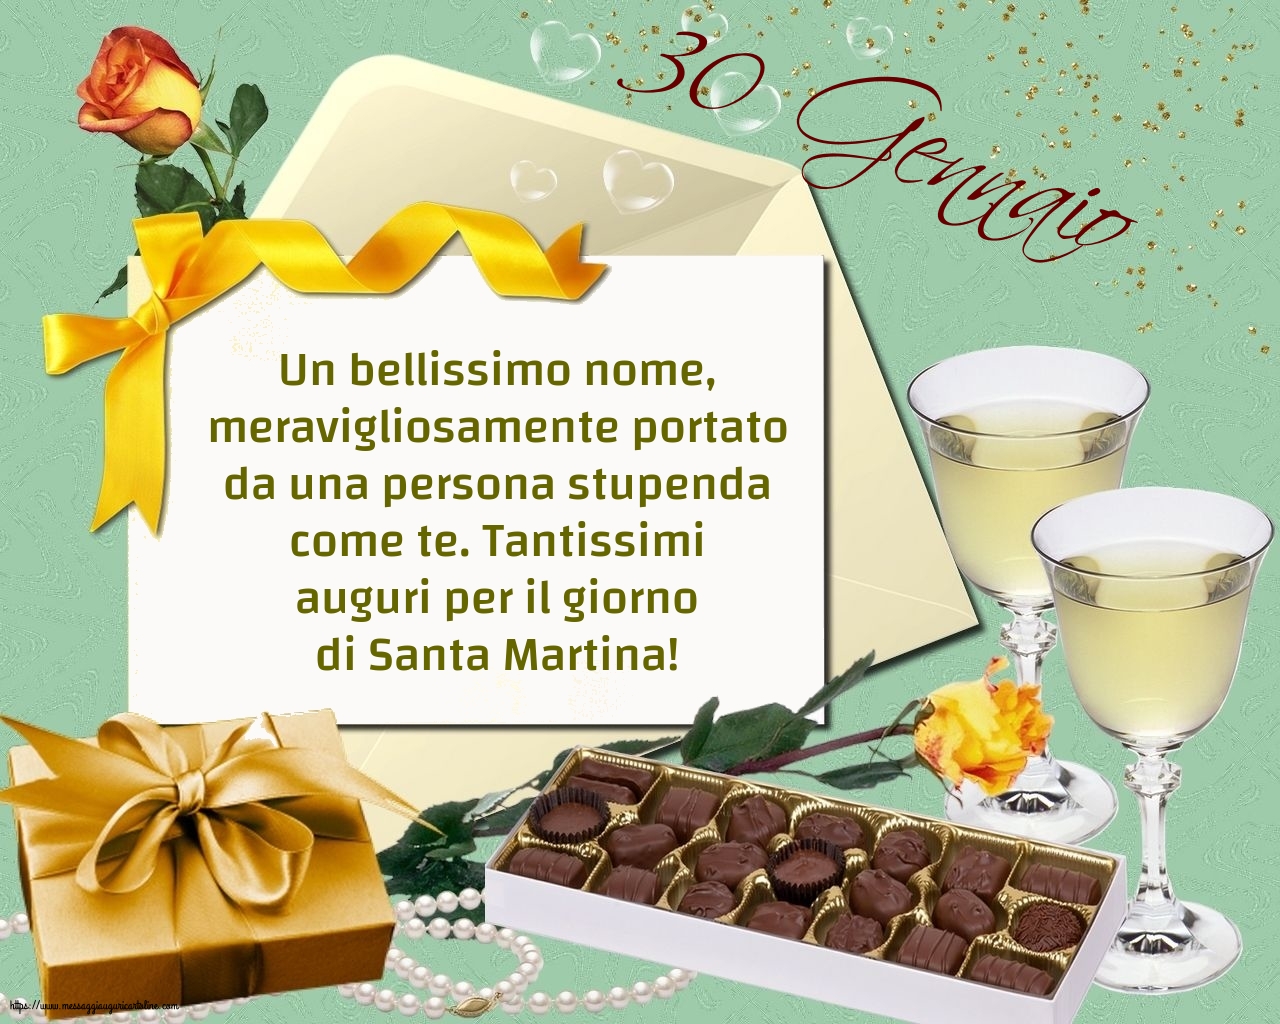 Santa Martina 30 Gennaio - Tantissimi auguri per il giorno di Santa Martina!